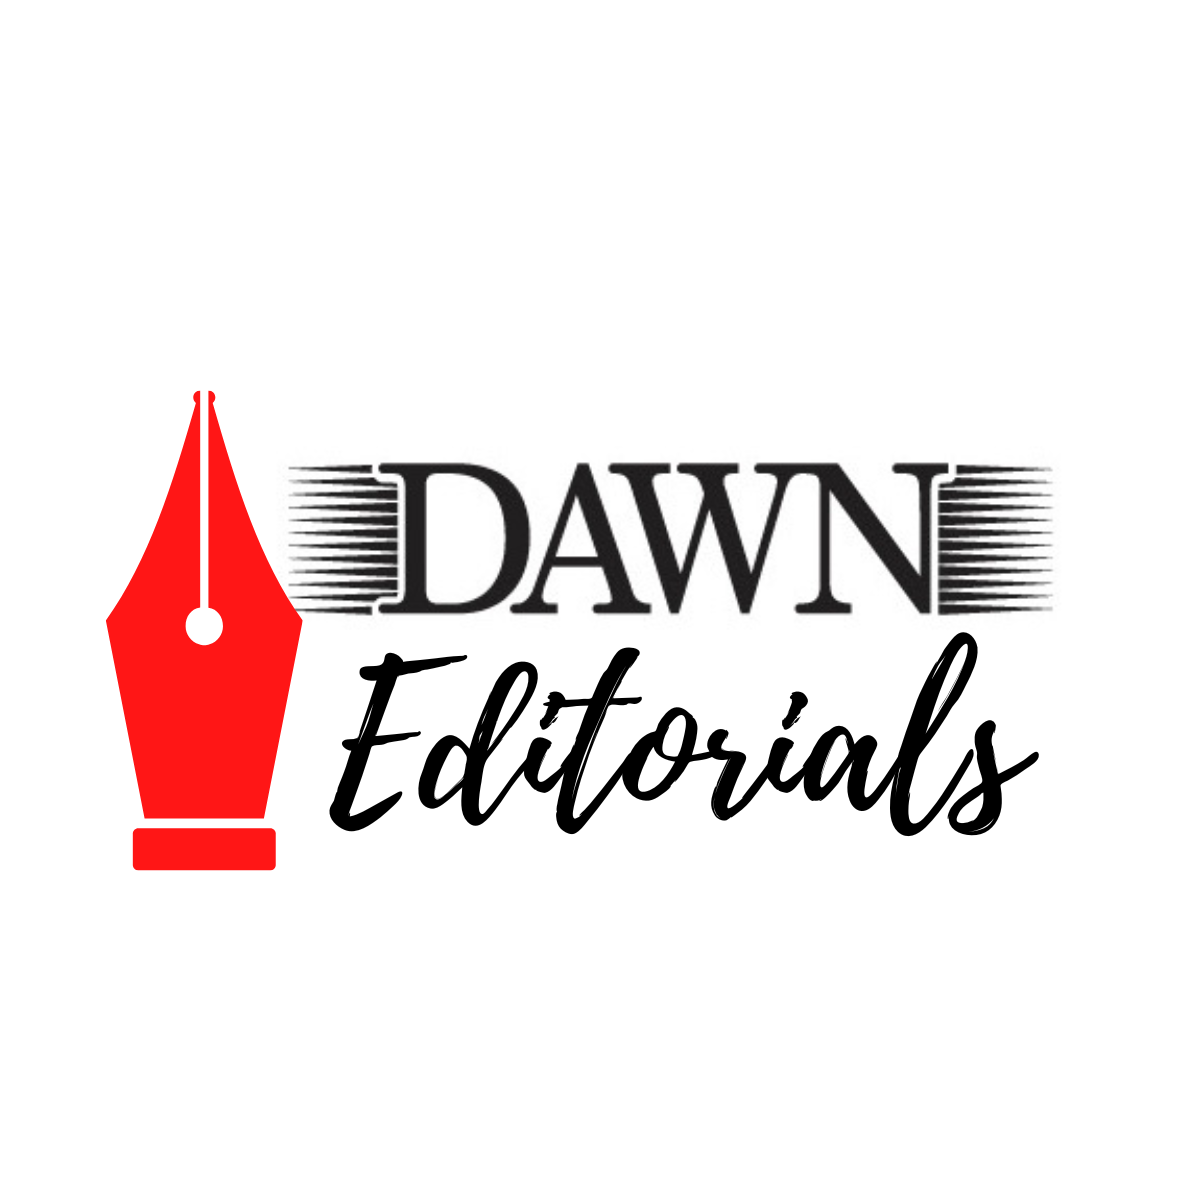 DAWN Editorials